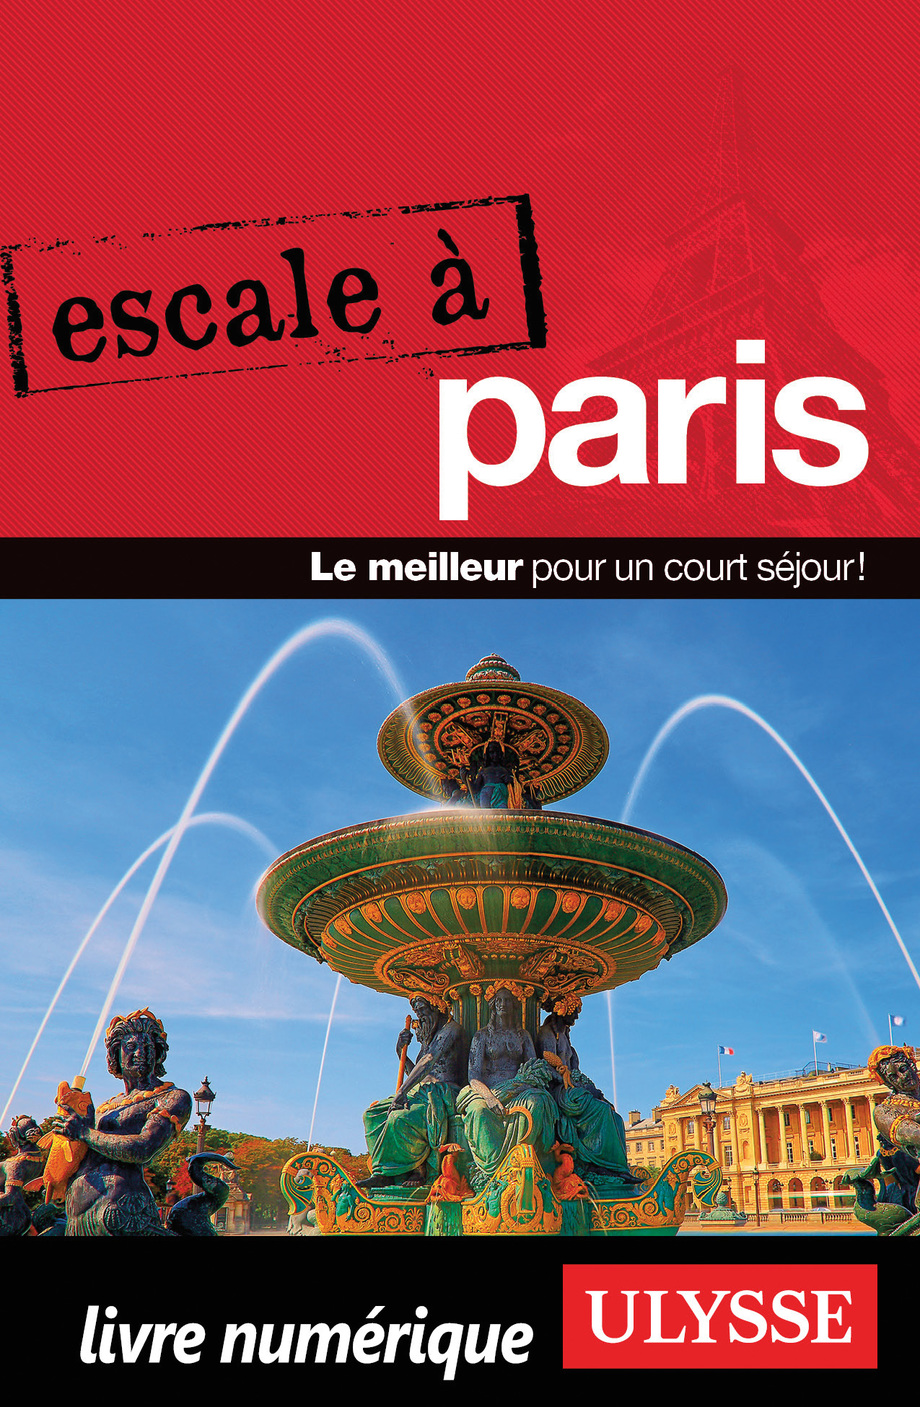 Image: Escale à Paris